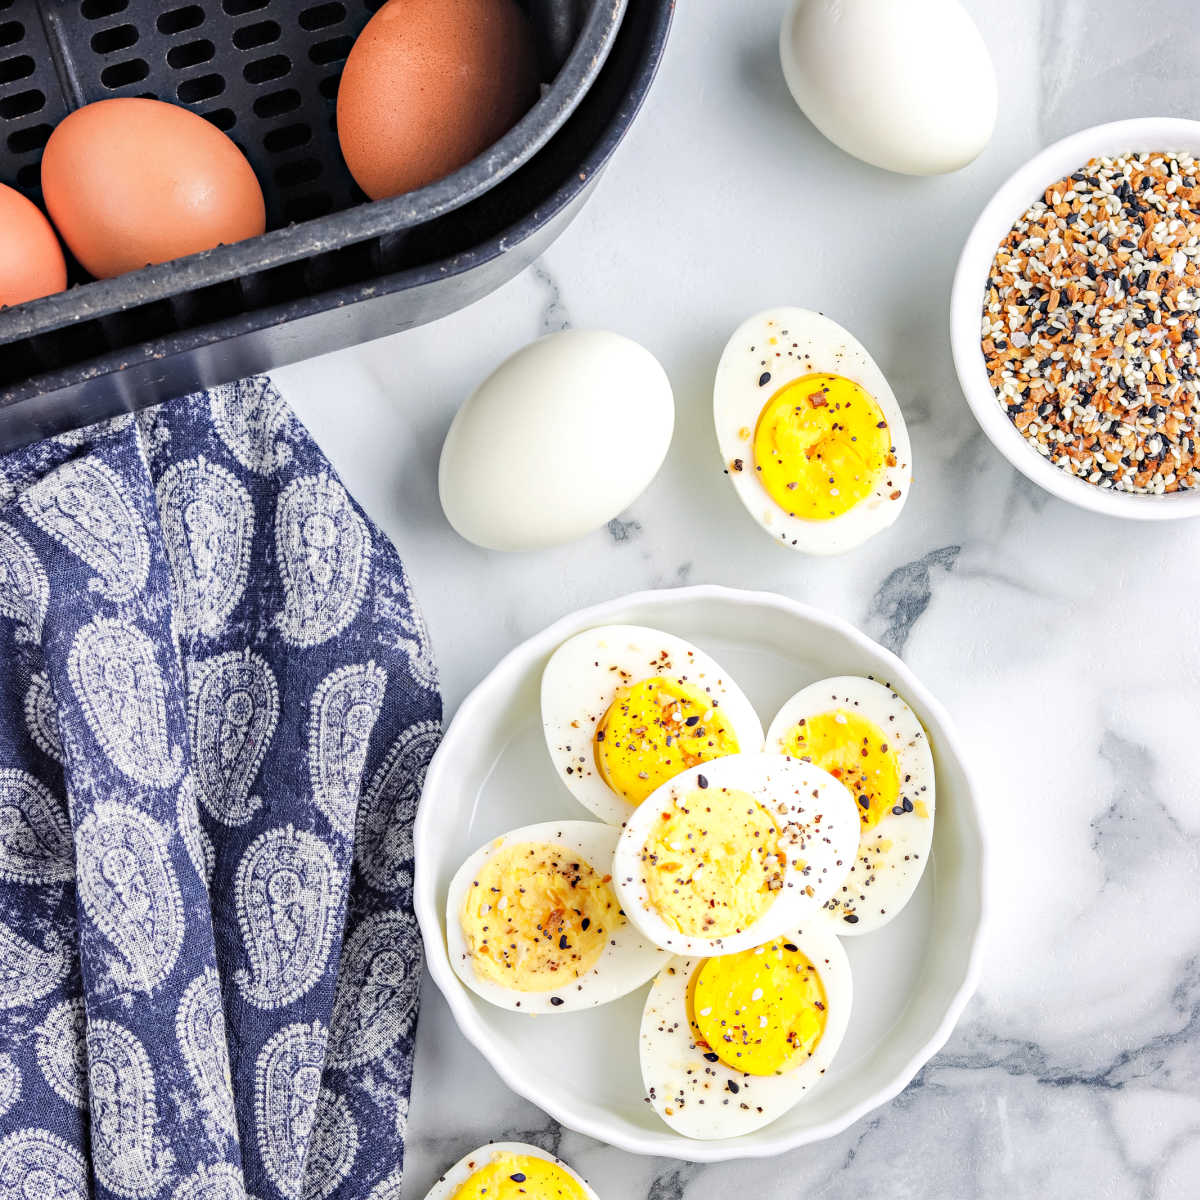 https://easybudgetrecipes.com/wp-content/uploads/2022/03/Hard-Boil-Eggs-In-Air-Fryer.jpg